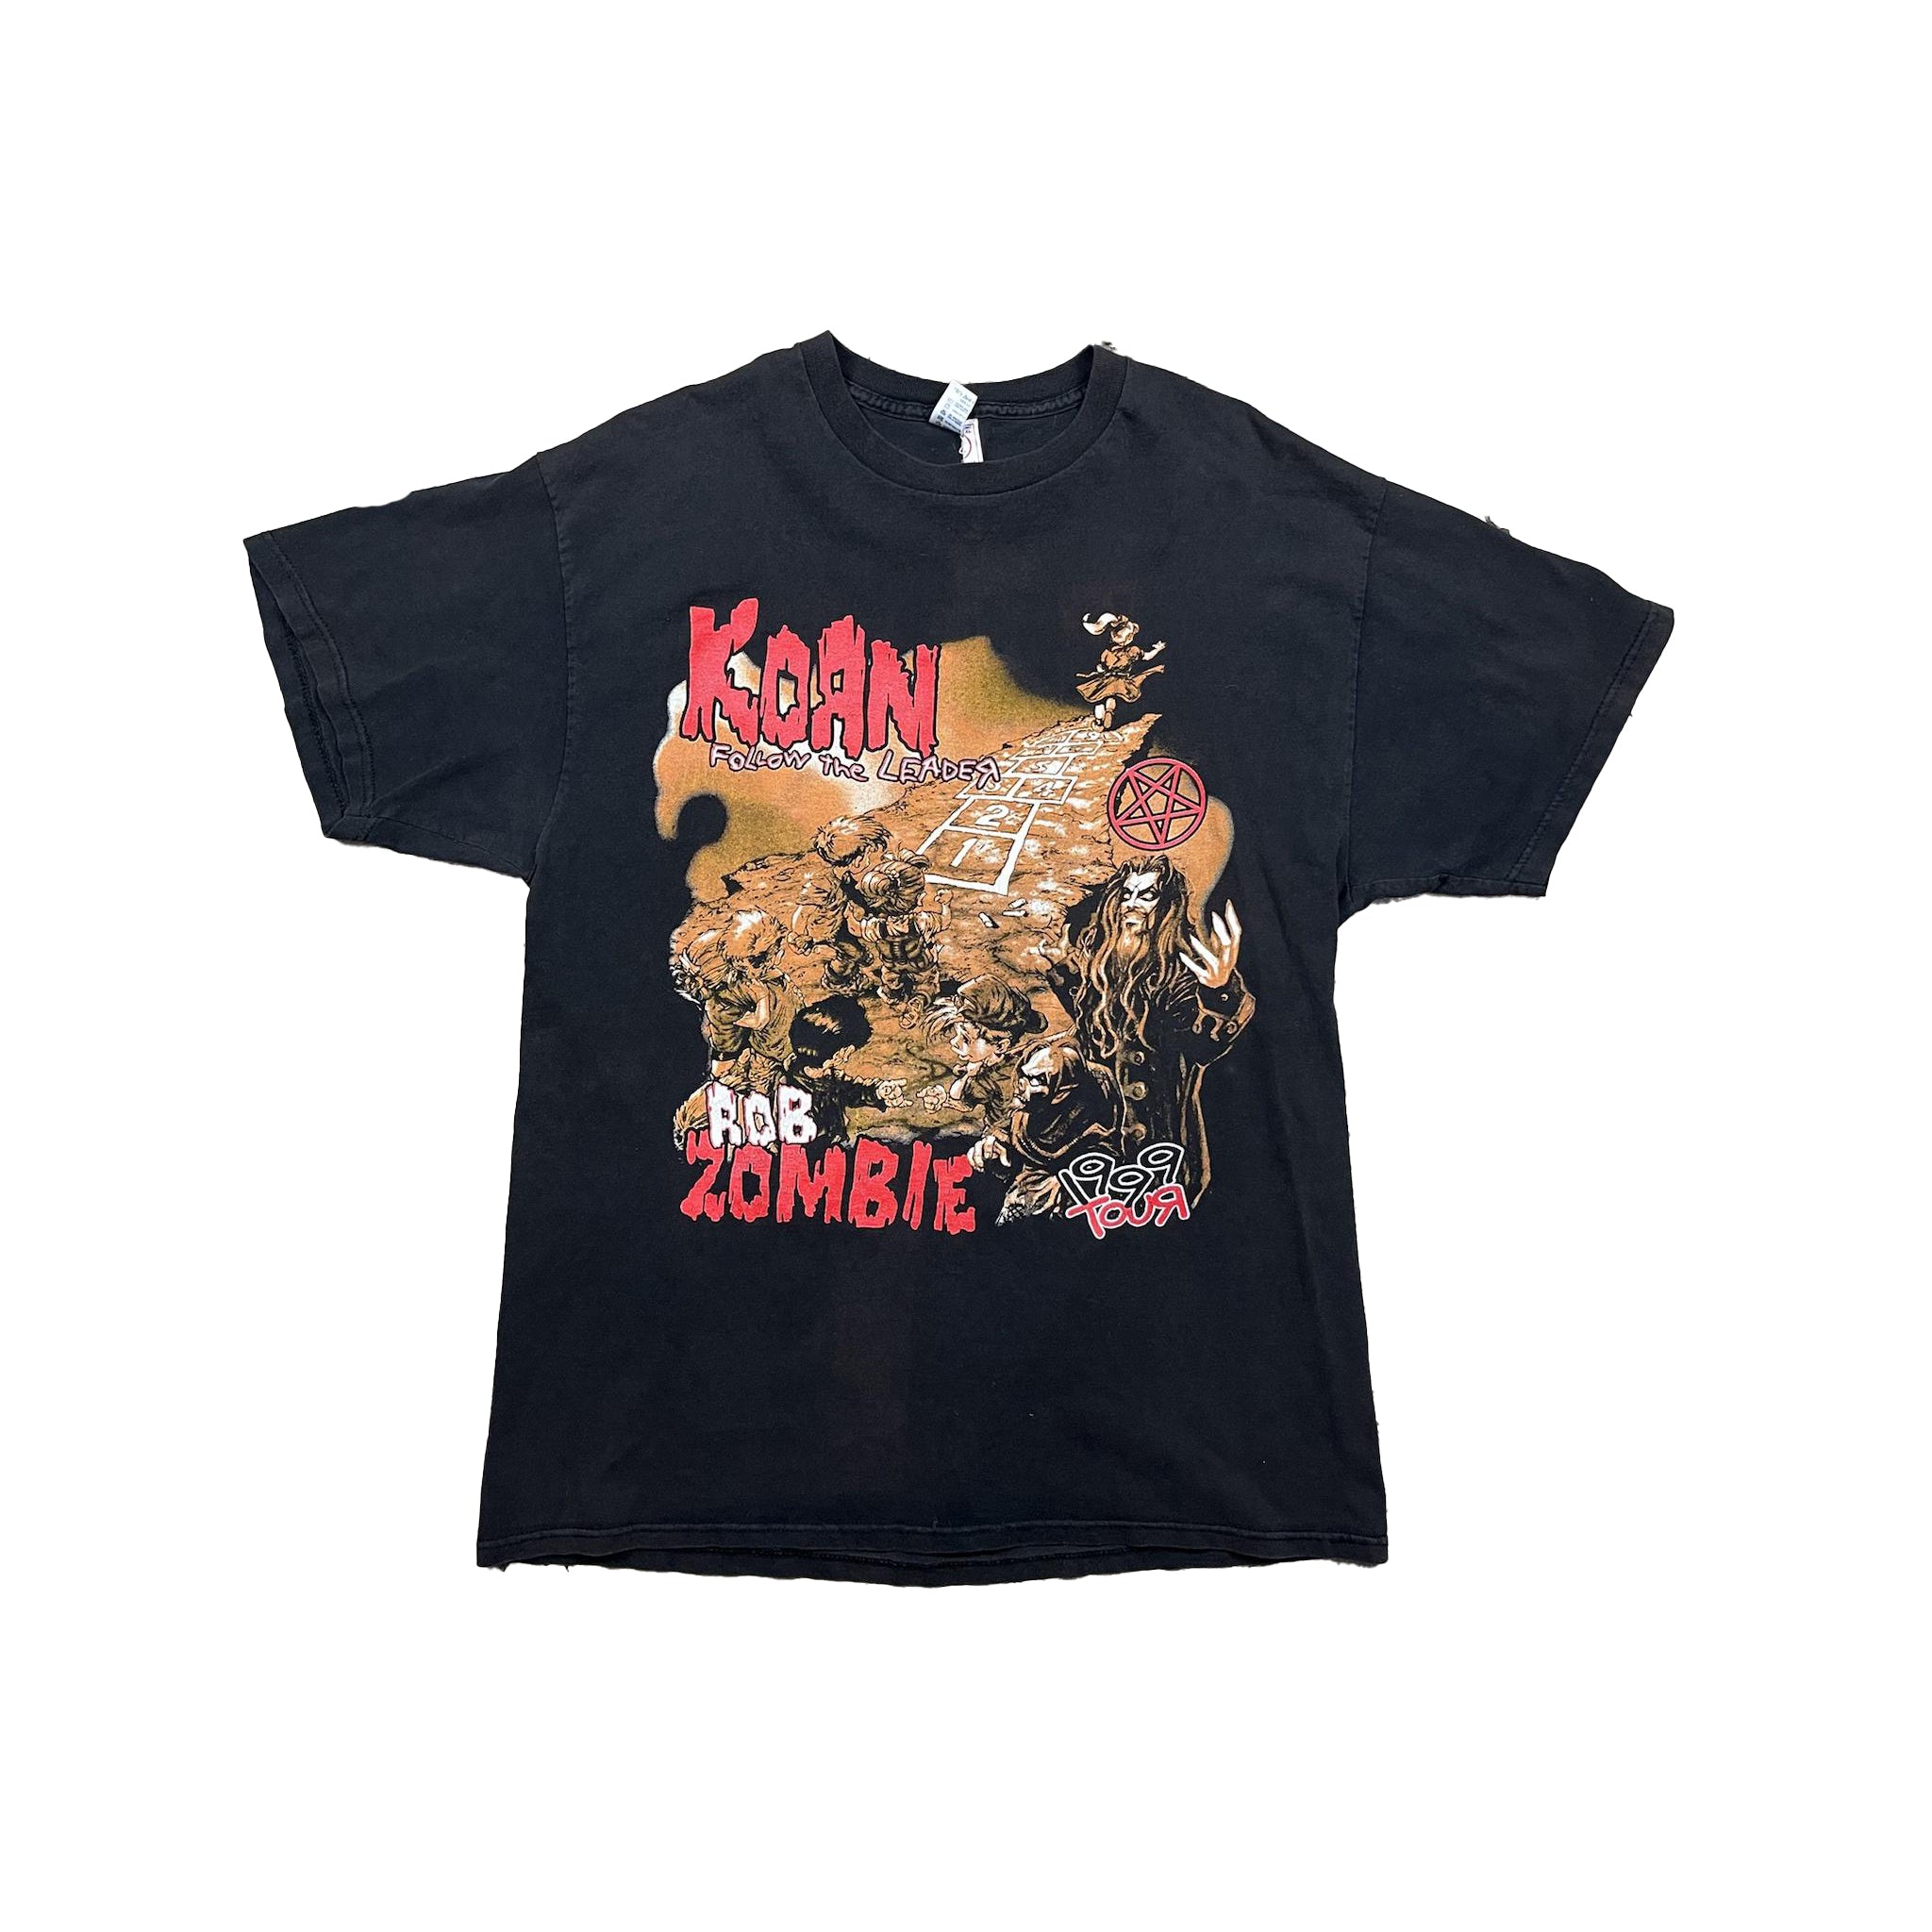 Korn x Rob Zombie Tour Tshirt Hid.n